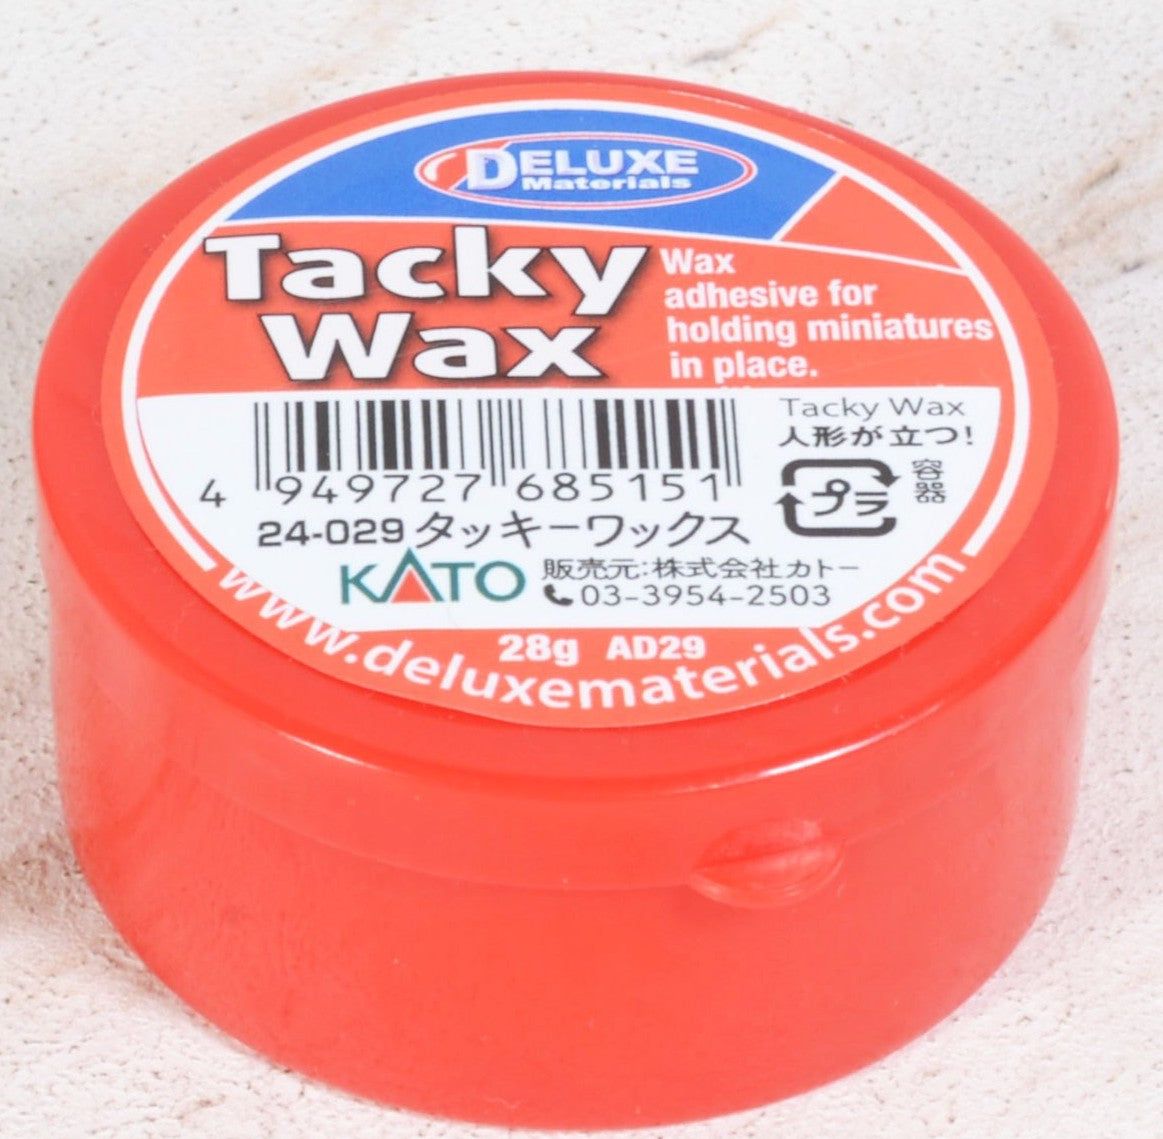 KATO 24-029 Tacky Wax (28g) - BanzaiHobby